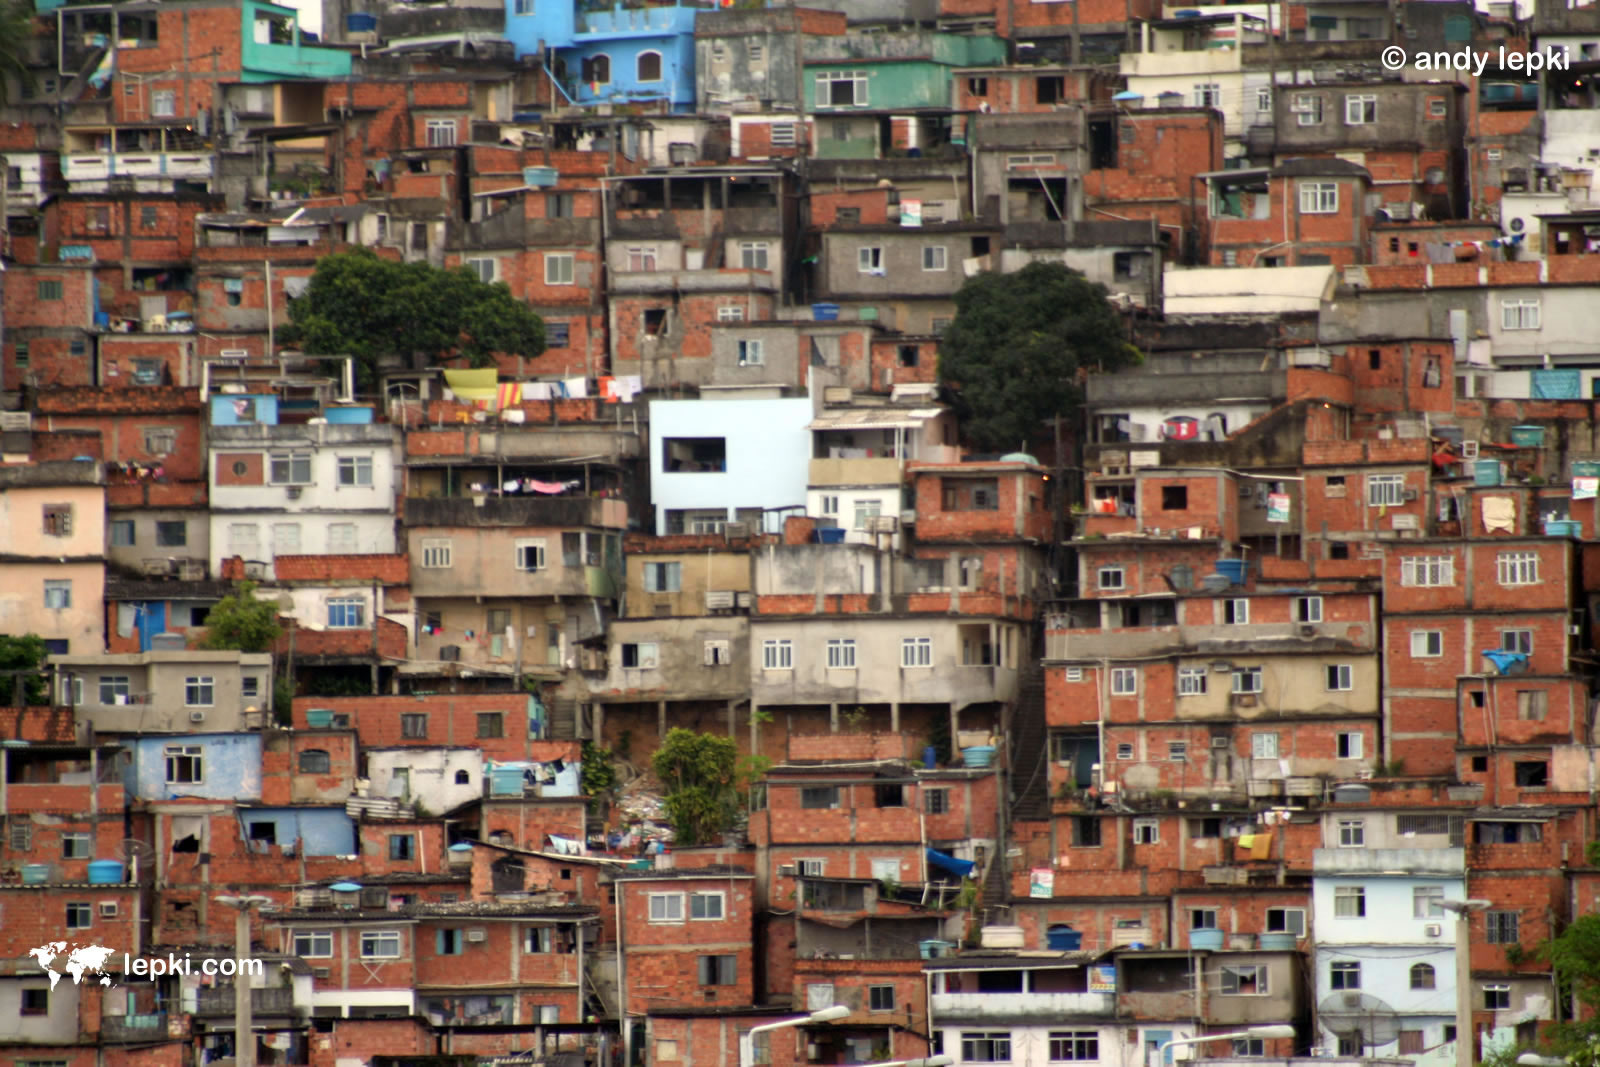 Brazil Favela Wallpaper Andy Lepki Photography